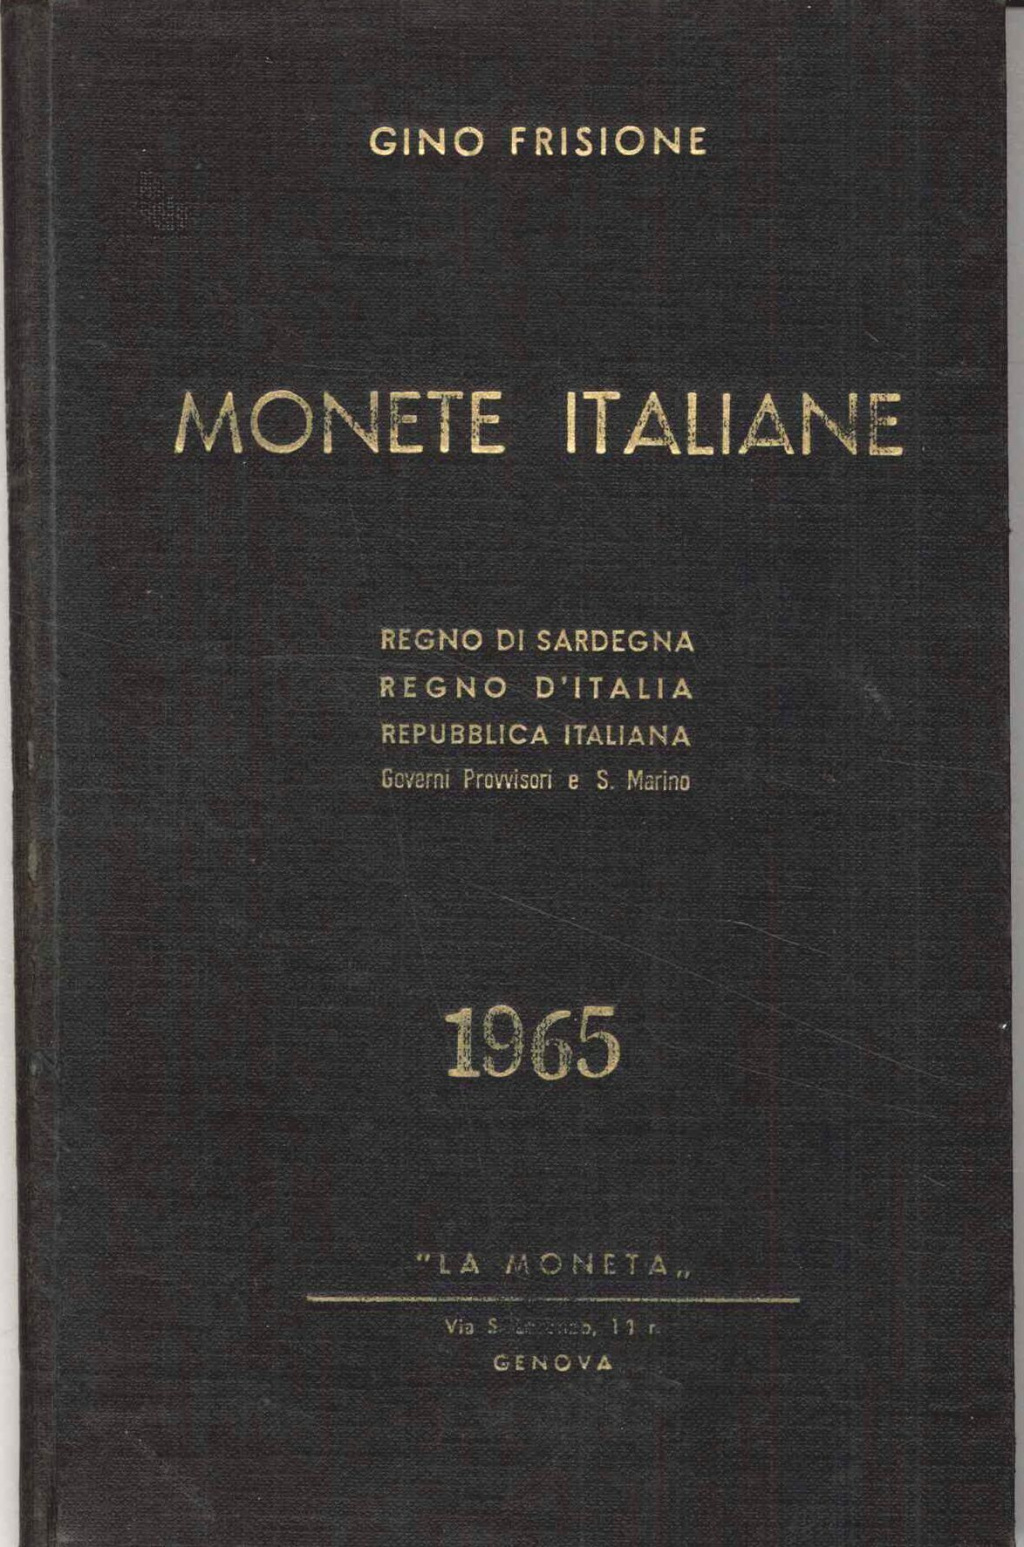 Monete Italiane. Regno di Sardegna, Regno d'Italia, Repubblica Italiana, Governi provvisori e S. Marino. 1965